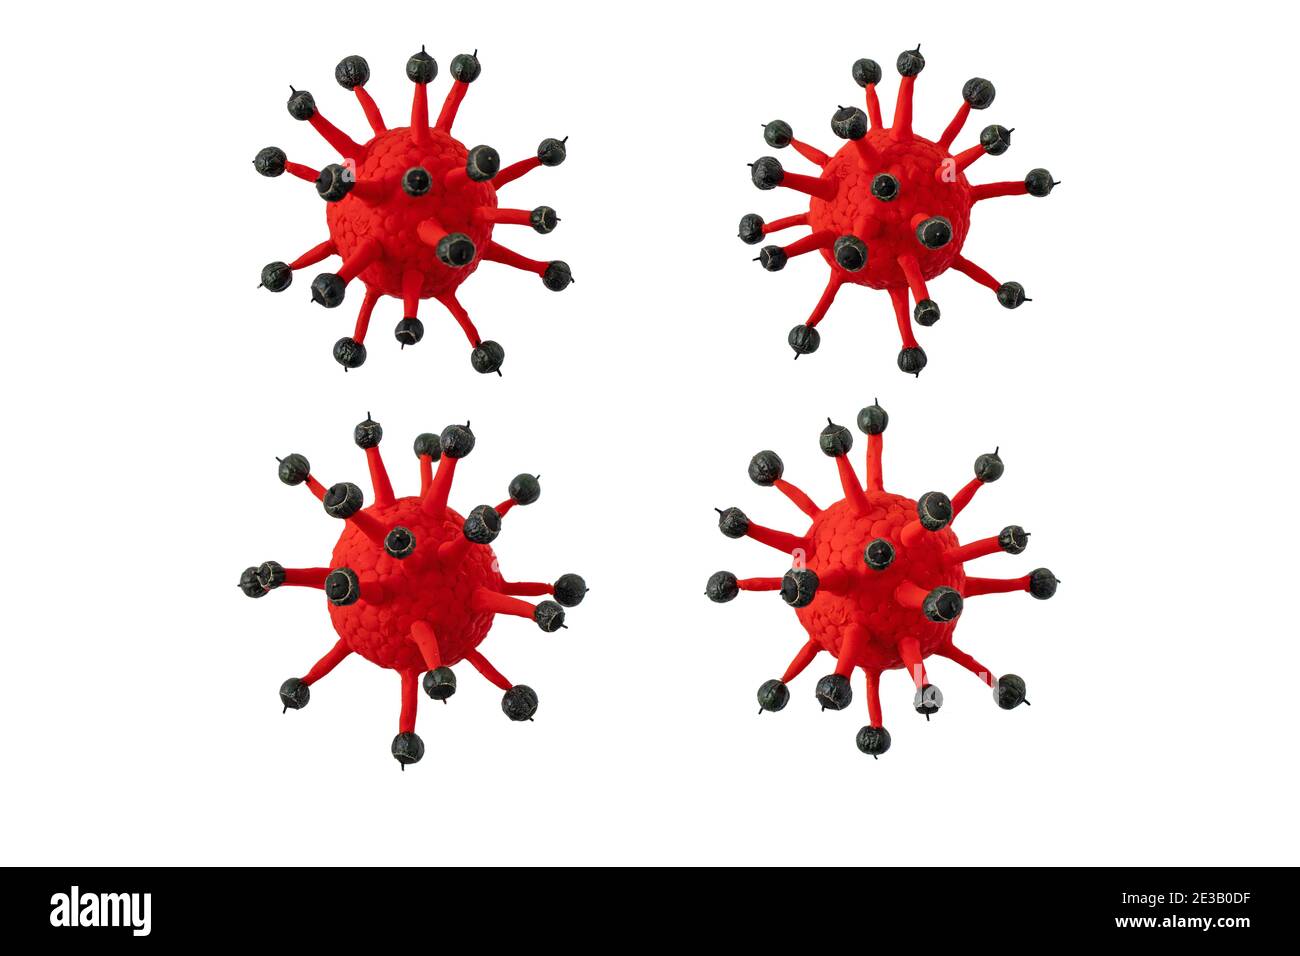 Cellule di coronavirus isolate su bianco. Immagine 3d dei virioni Covid-19. Foto Stock